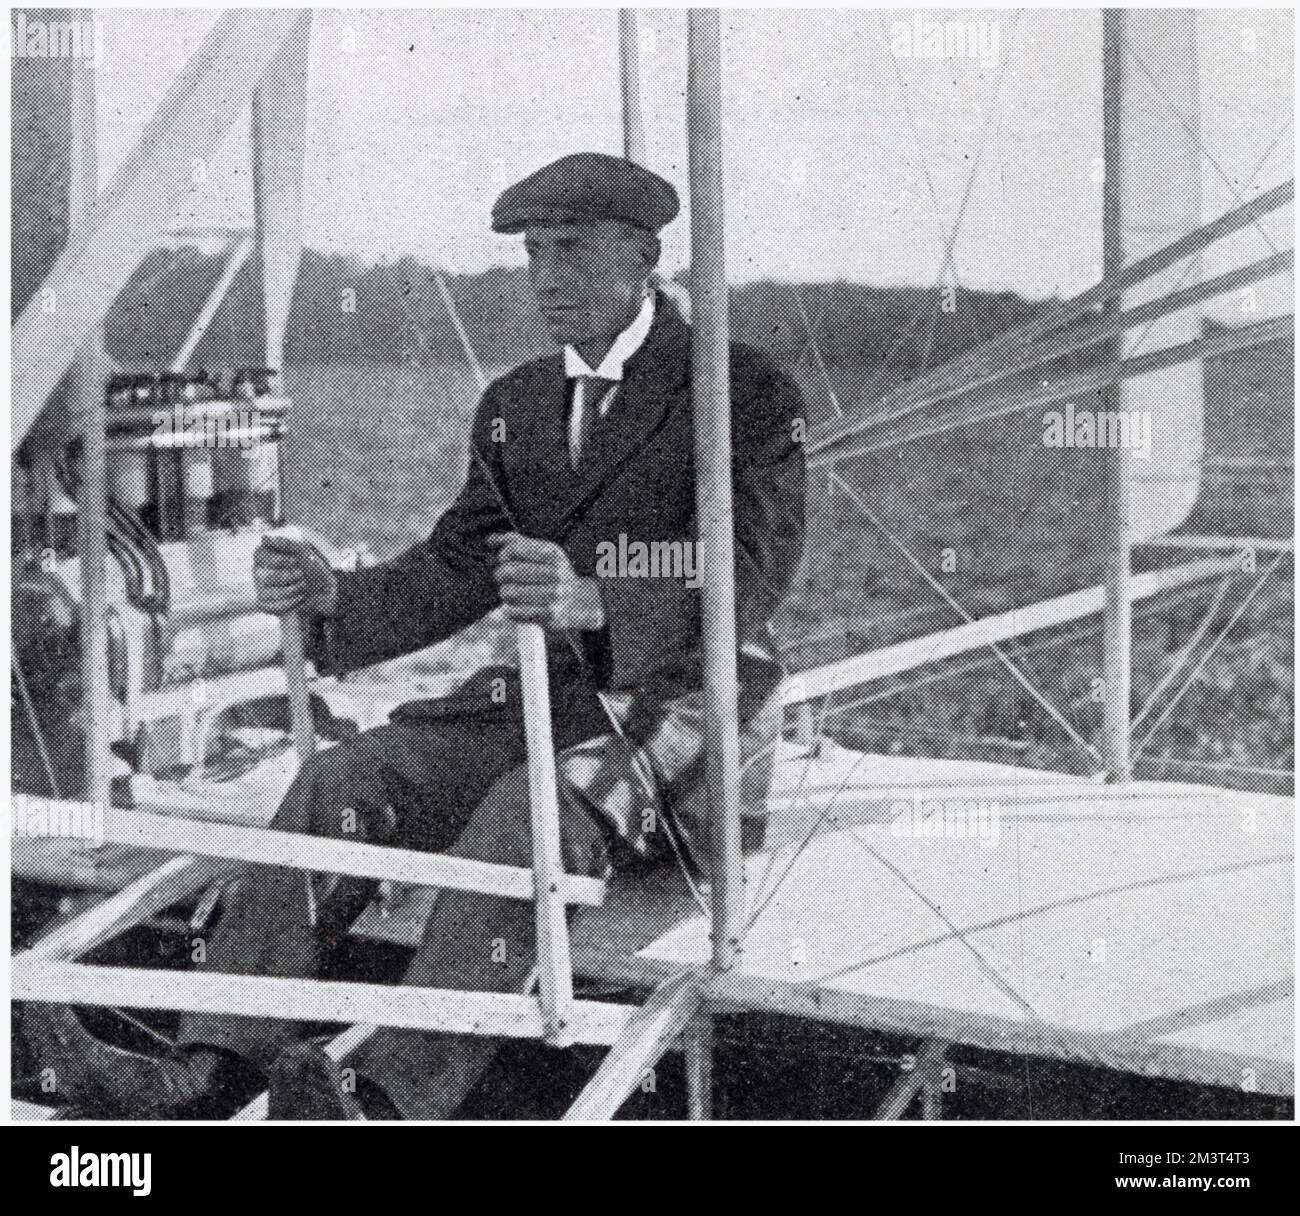 Wilbur Wright (1867 - 1912), pioniere dell'aviazione americana, inventore del primo aereo a motore di successo. Fotografia che mostra Wright poco prima di un volo, a le Mans vicino a Parigi. Data: Agosto 1908 Foto Stock